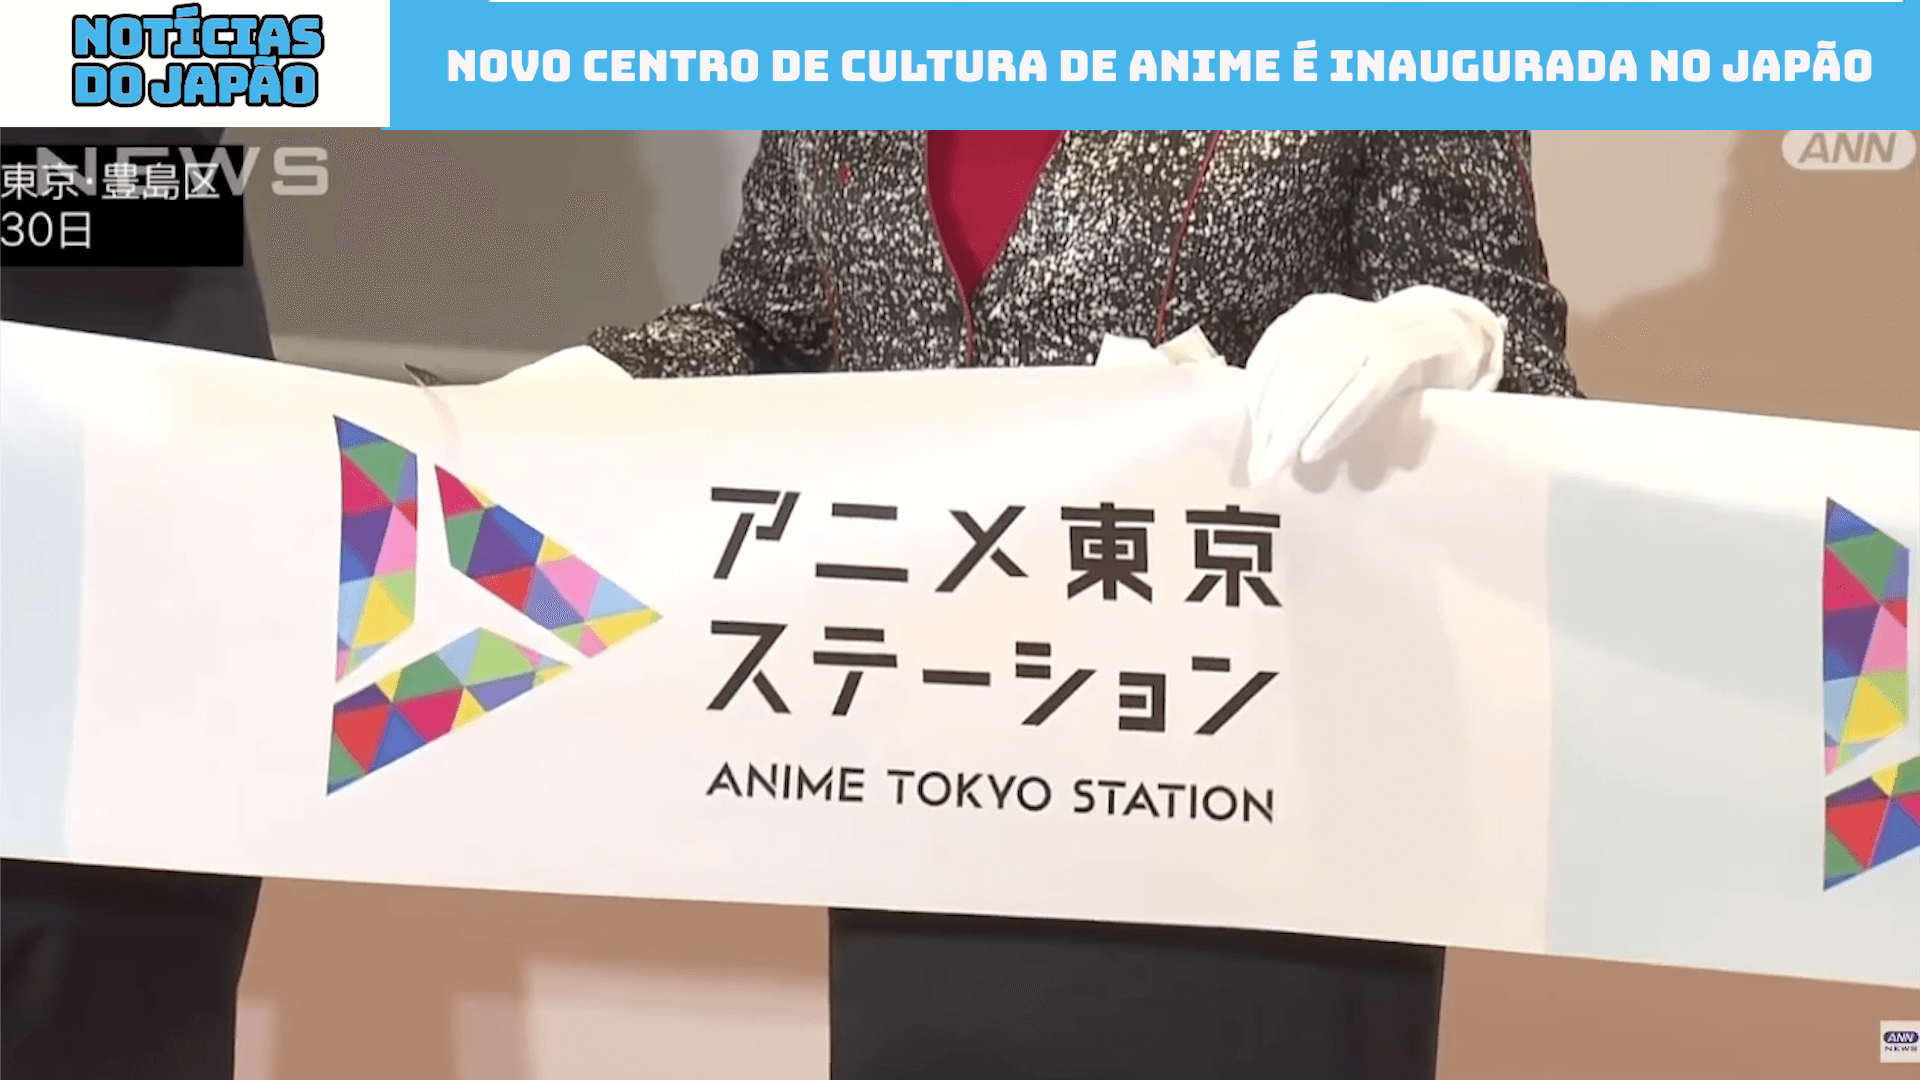 Novo Centro de Cultura de Anime é inaugurada no Japão